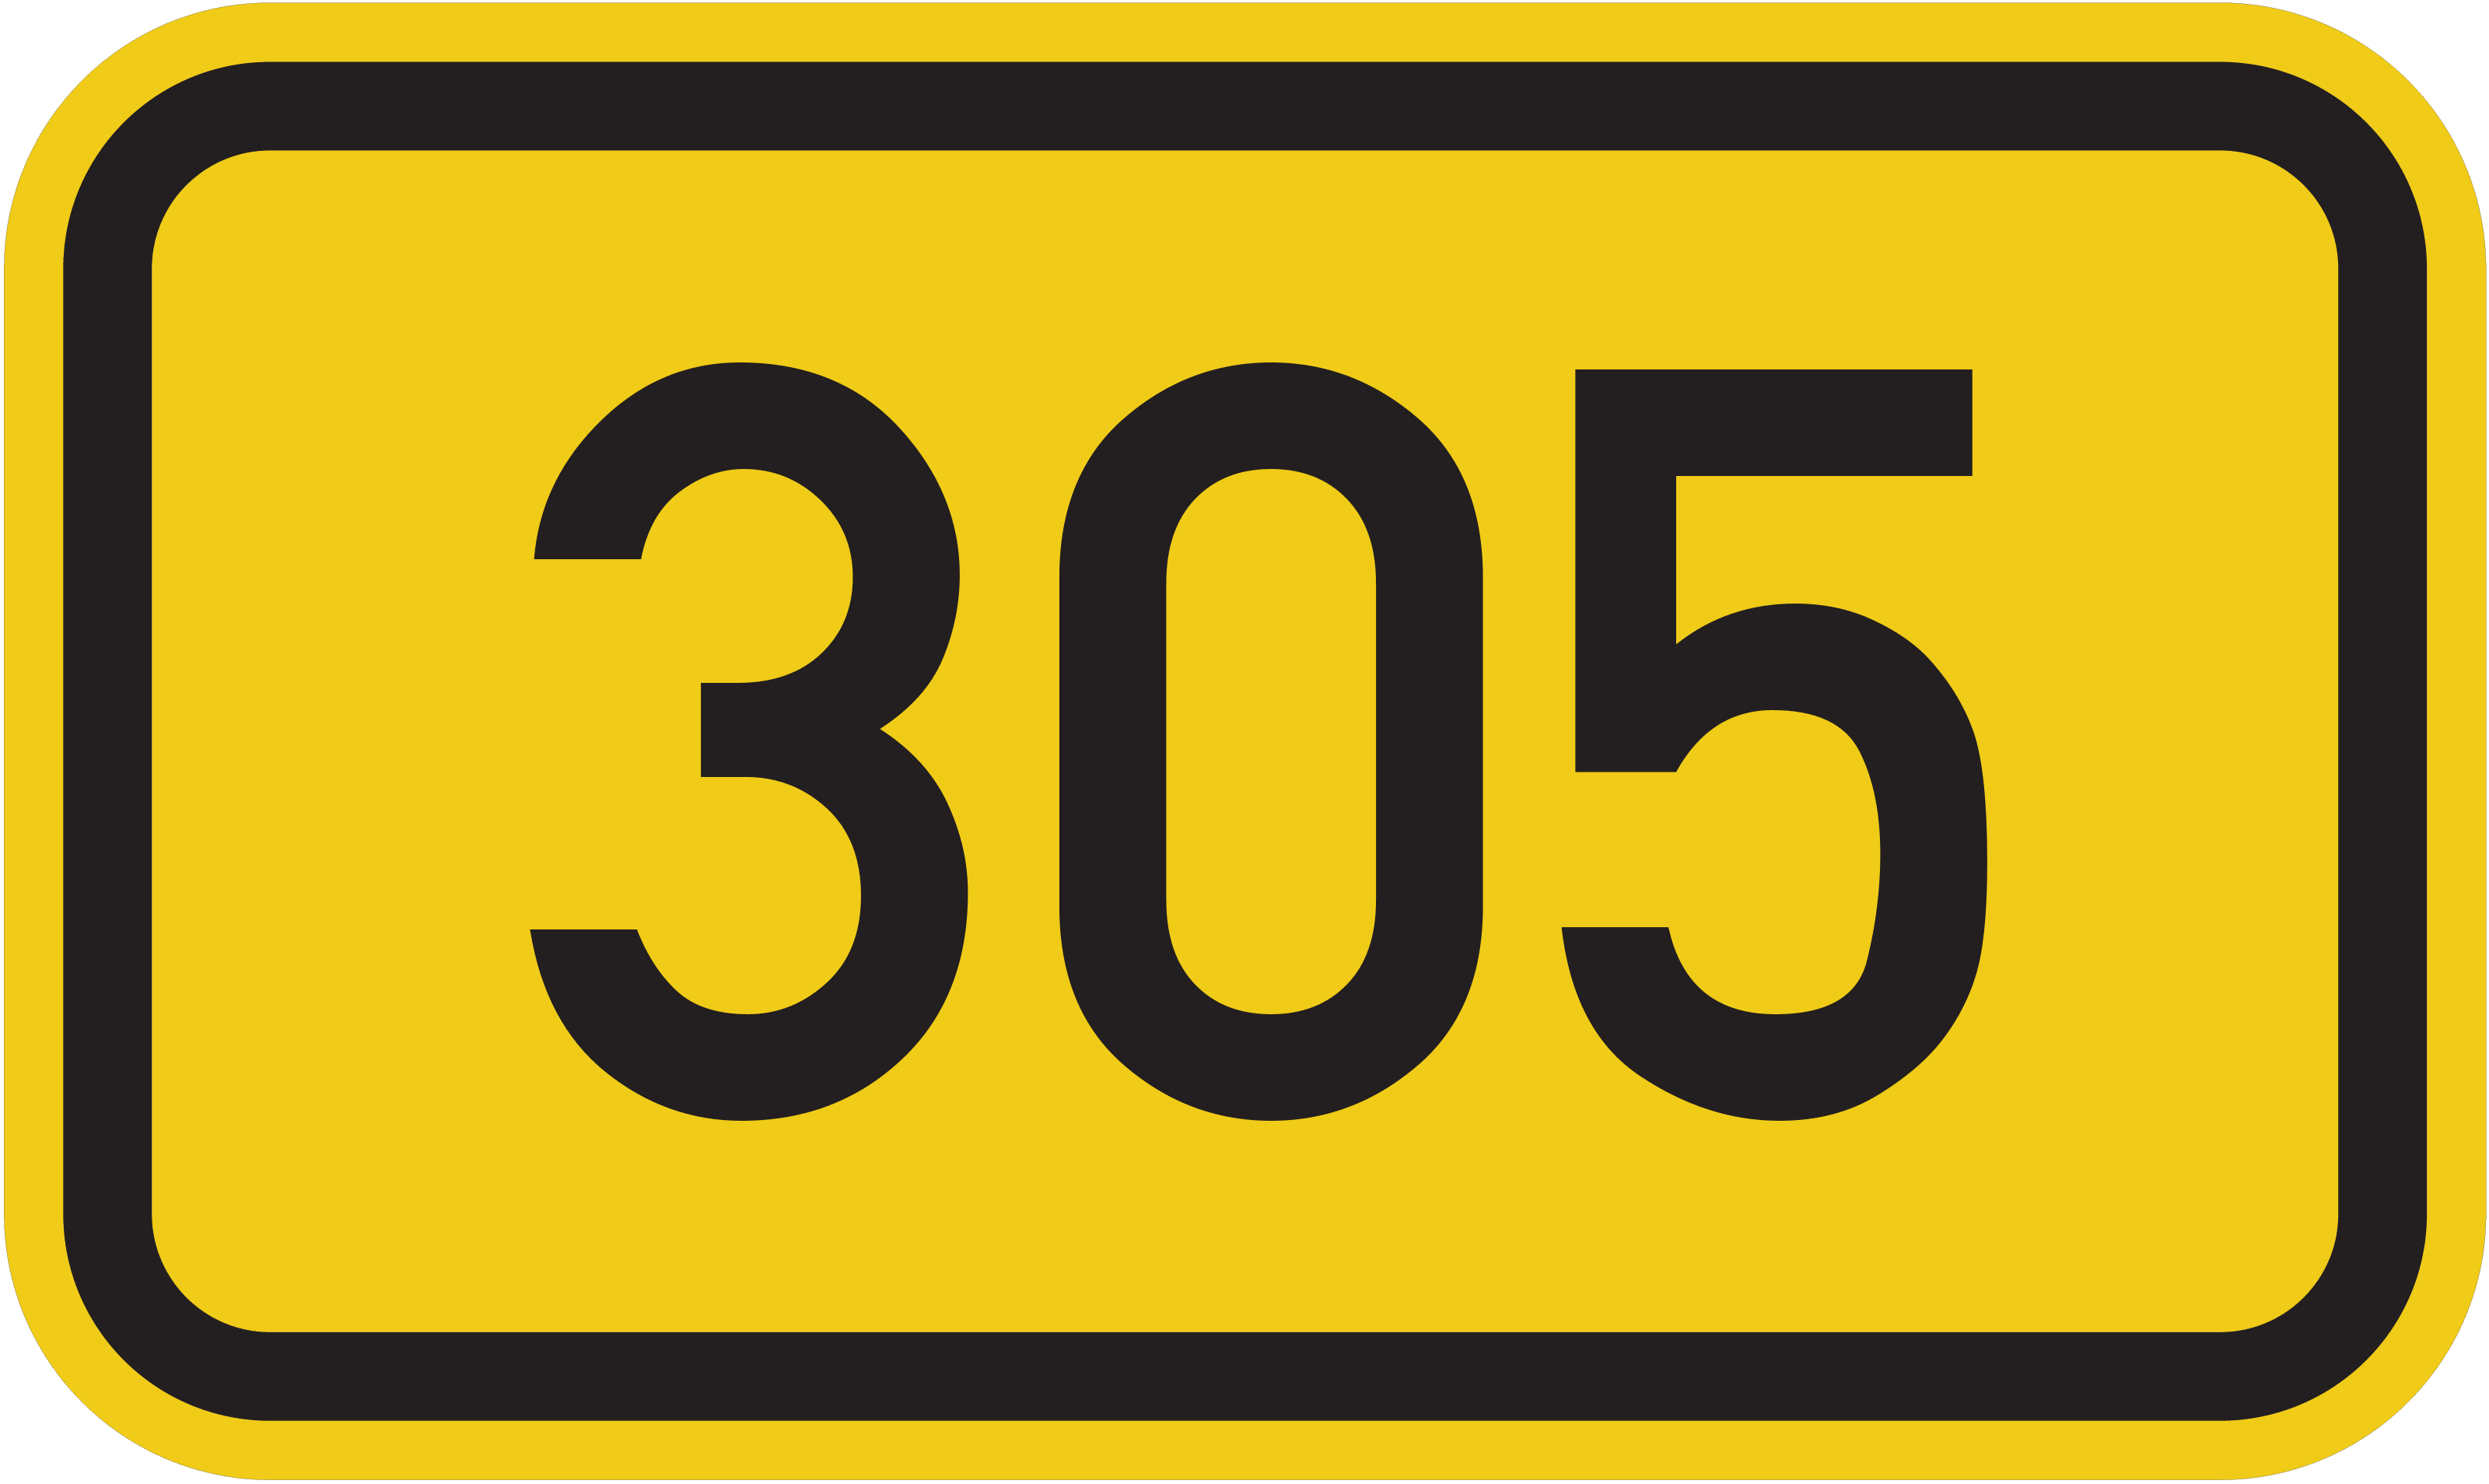 Bundesstraße B 305